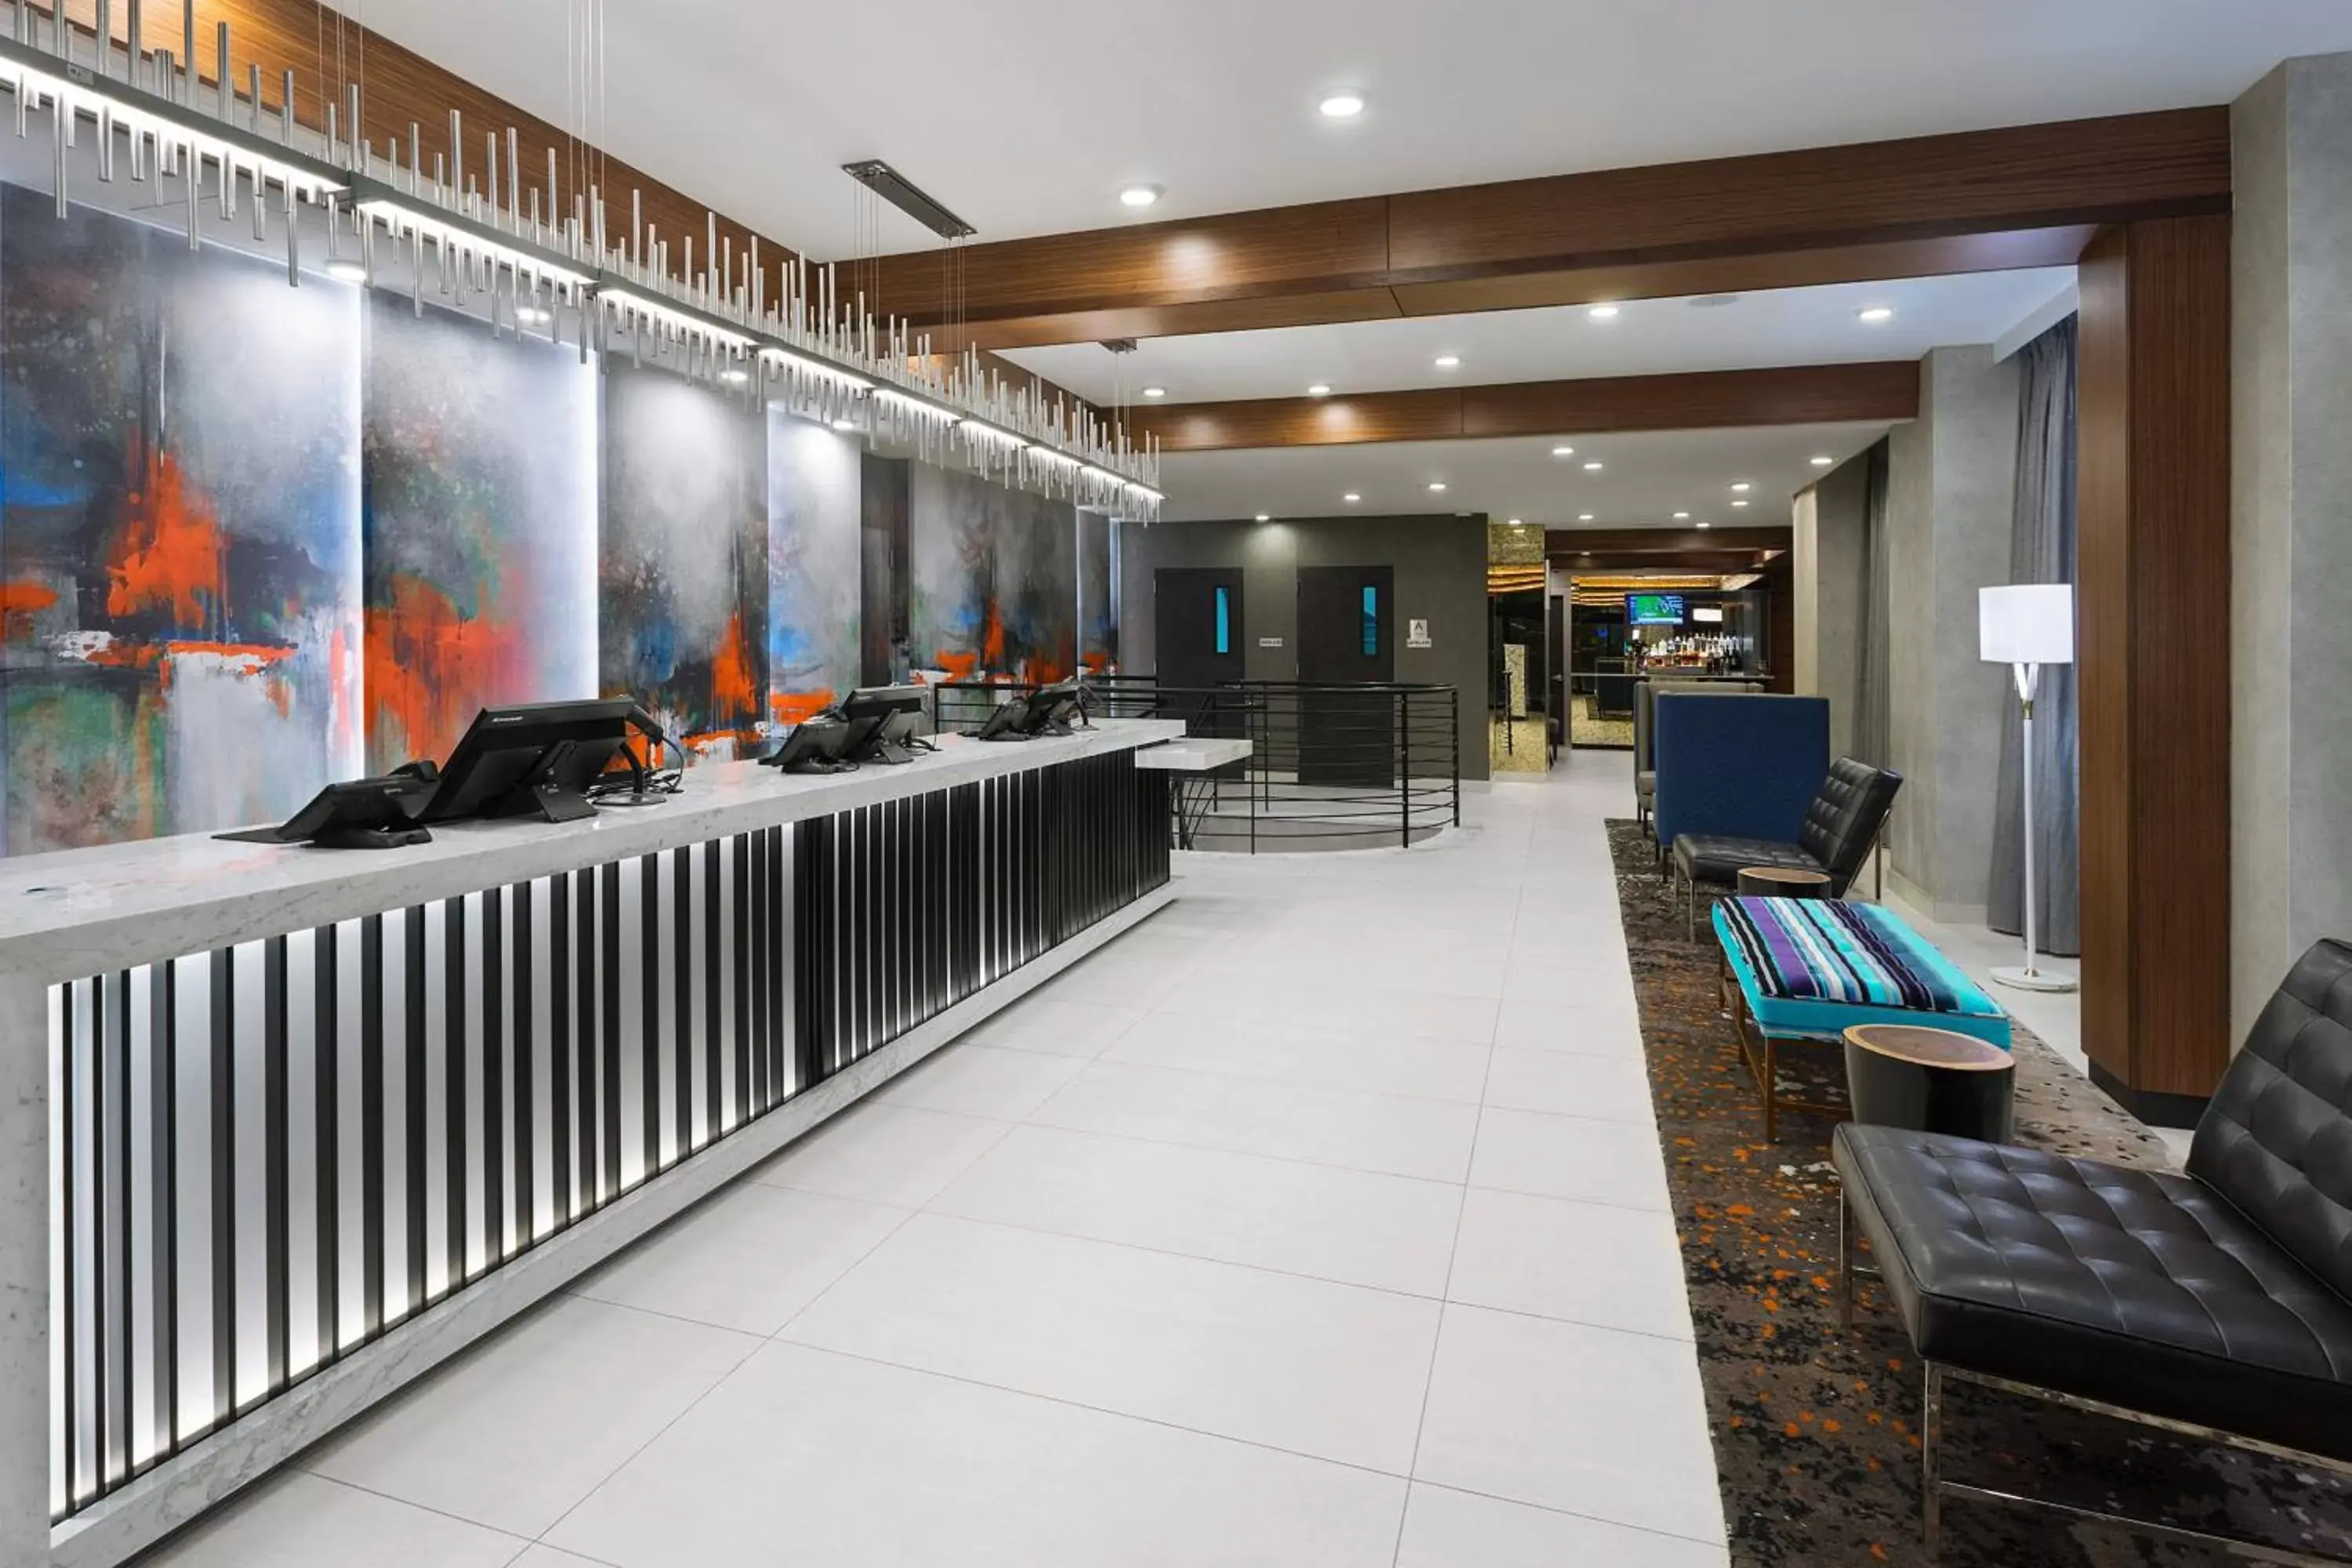 Lobby or reception in Fairfield Inn & Suites by Marriott New York Manhattan/Central Park